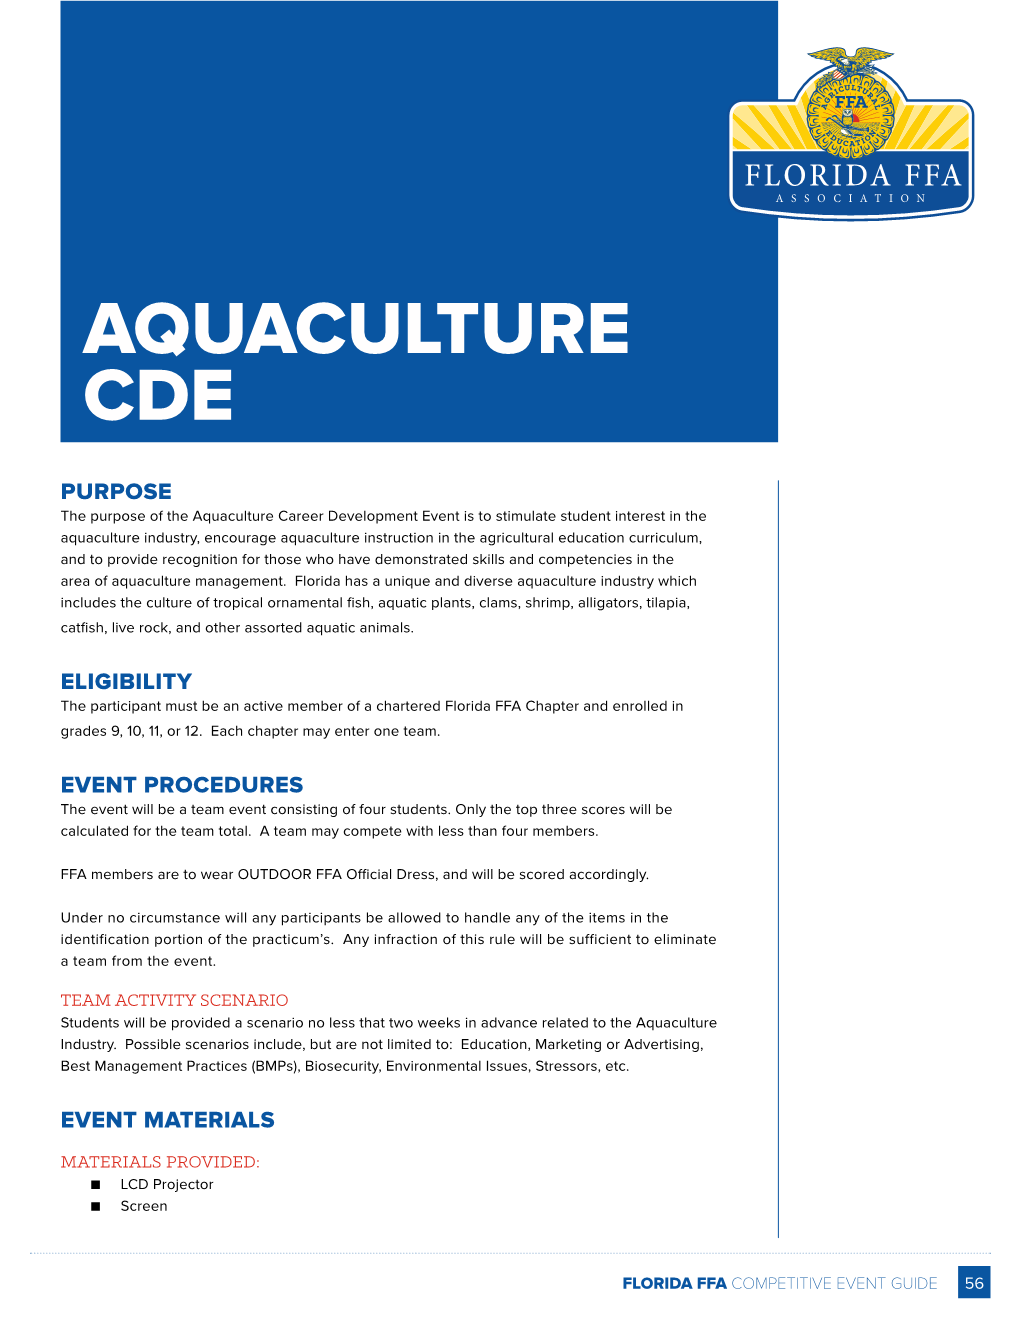 Aquaculture Cde